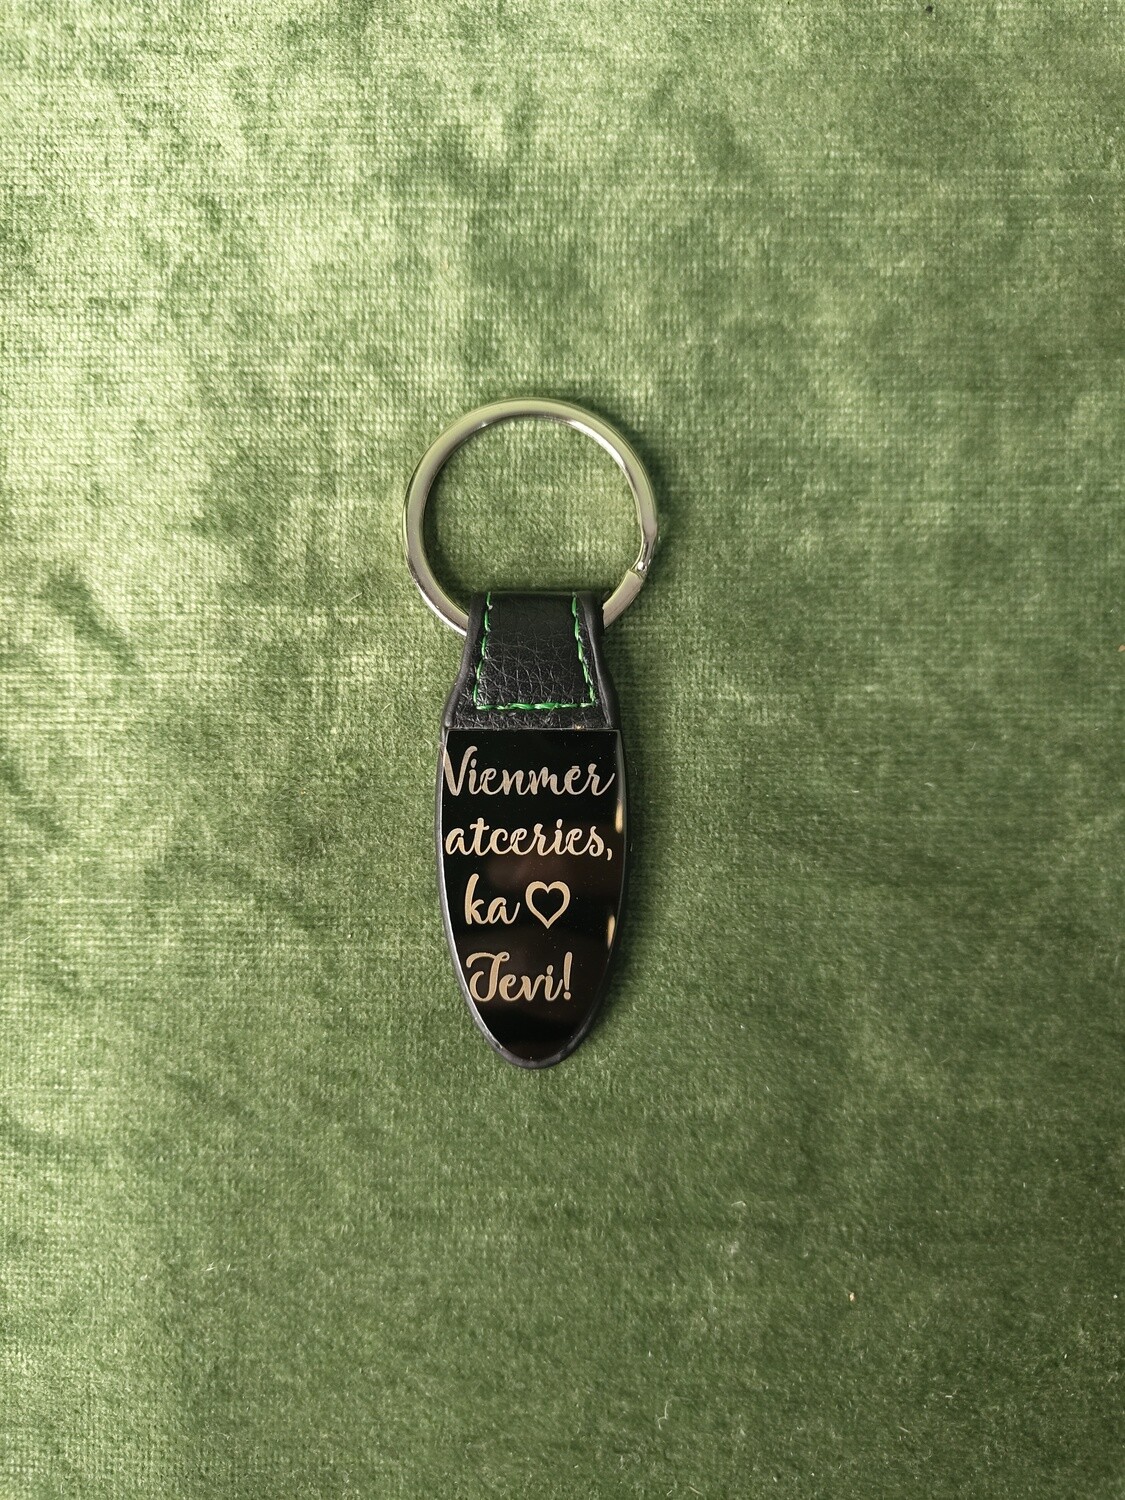 Metāla atslēgu piekariņš ar gravējumu "Vienmer atceries, ka ♥ tevi"